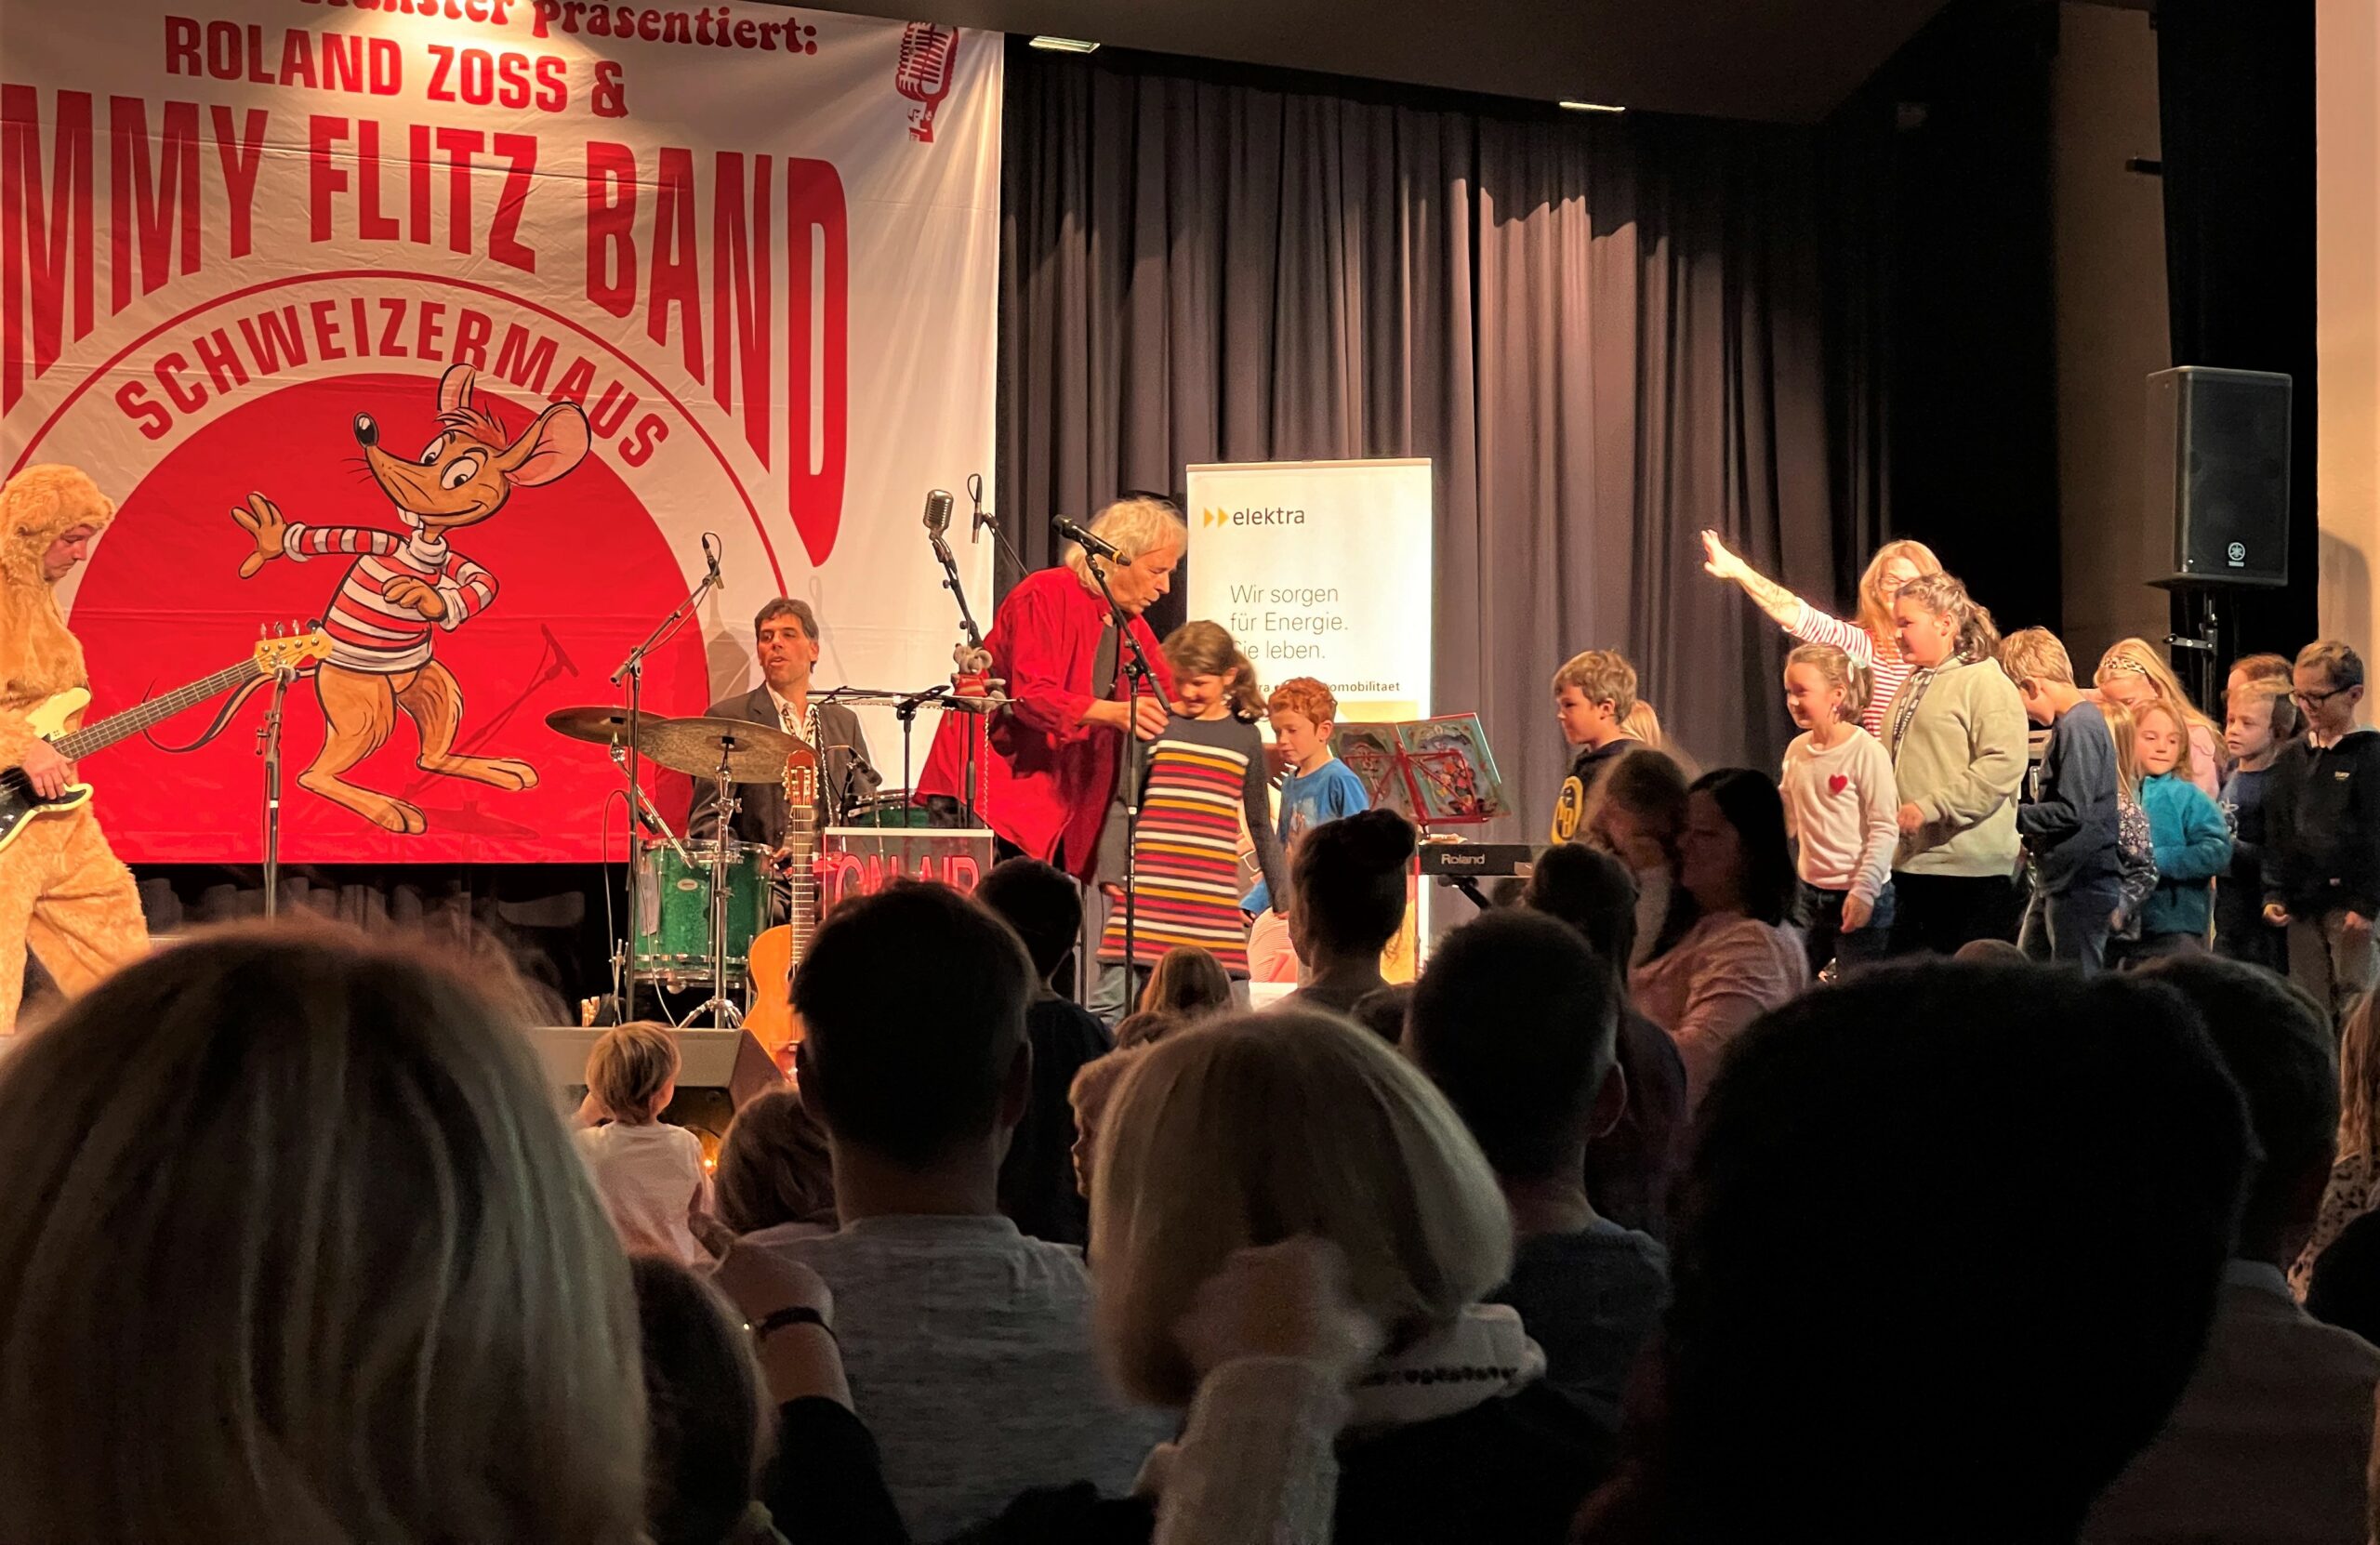 Roland Zoss ruft die Kinder zu sich auf die Bühne, um gemeinsam am Kinderevent der Elektra zu singen und zu tanzen.